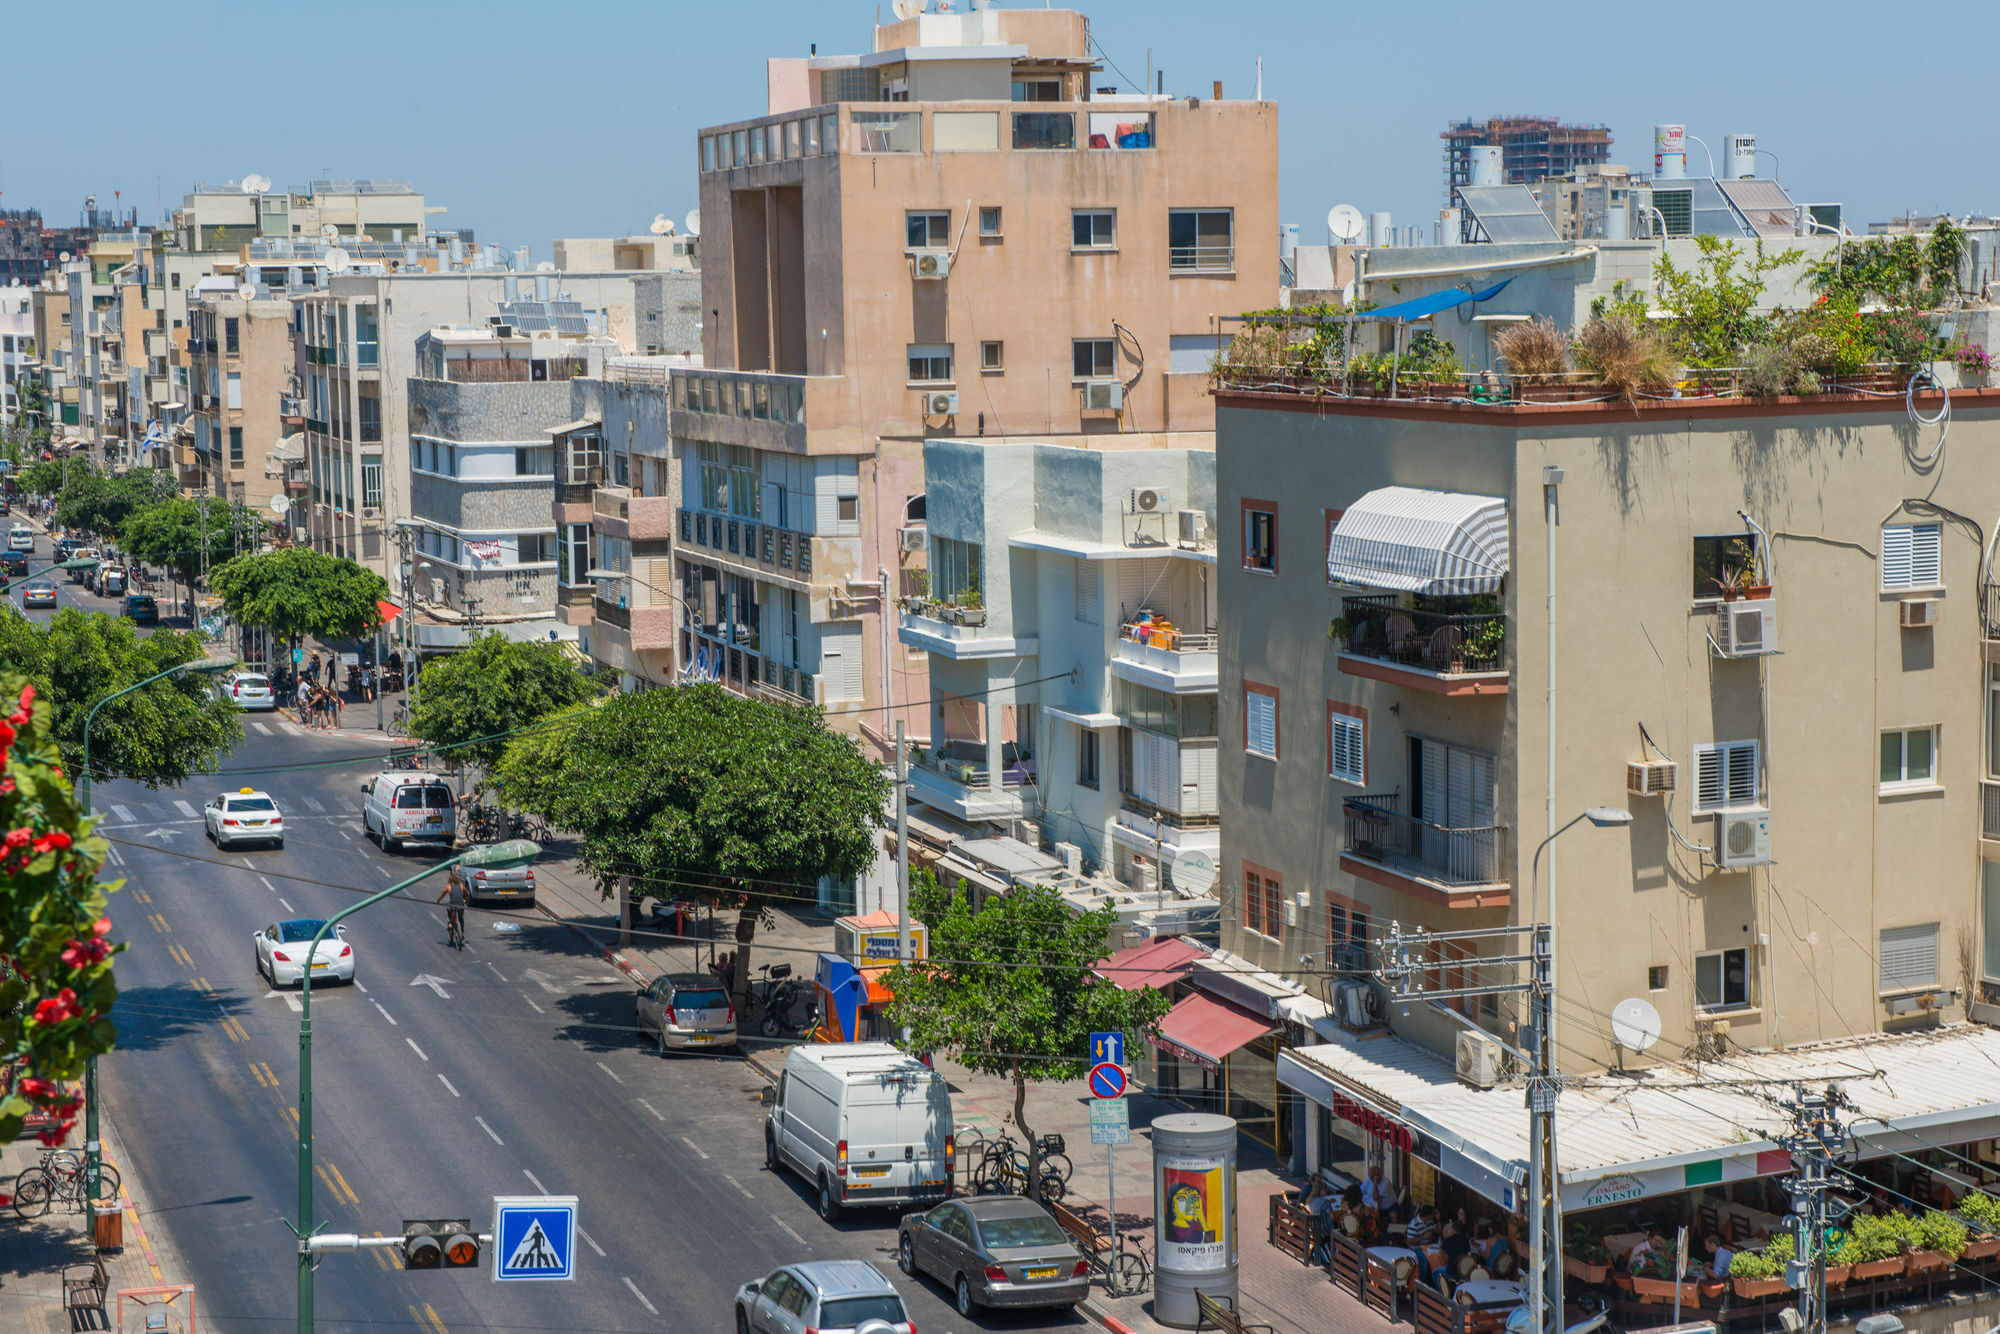 Gordon Inn Tel Aviv Eksteriør billede